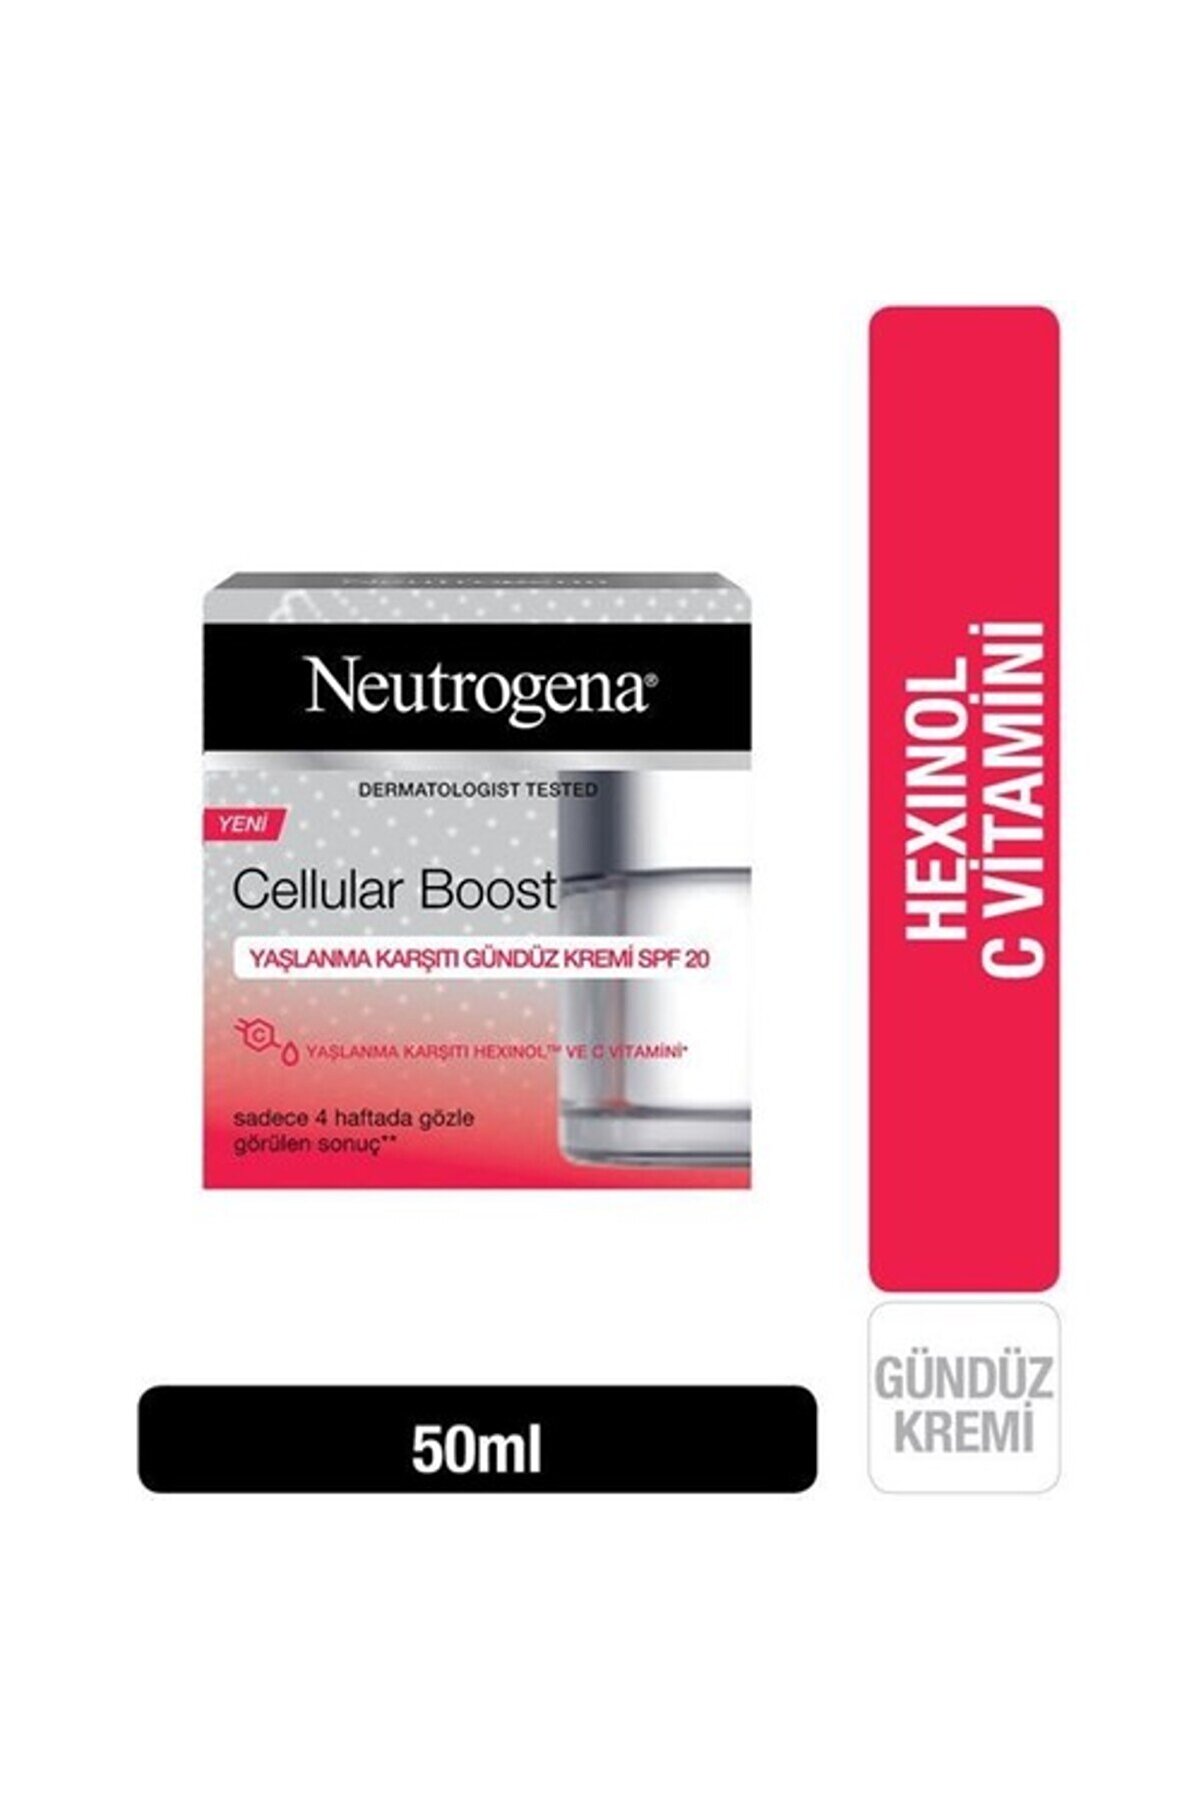 Neutrogena Yüz Bakım Kremi & Cellular Boost Yaşlanma Karşıtı Koruyuculu Spf20 Gündüz Kremi 50ml